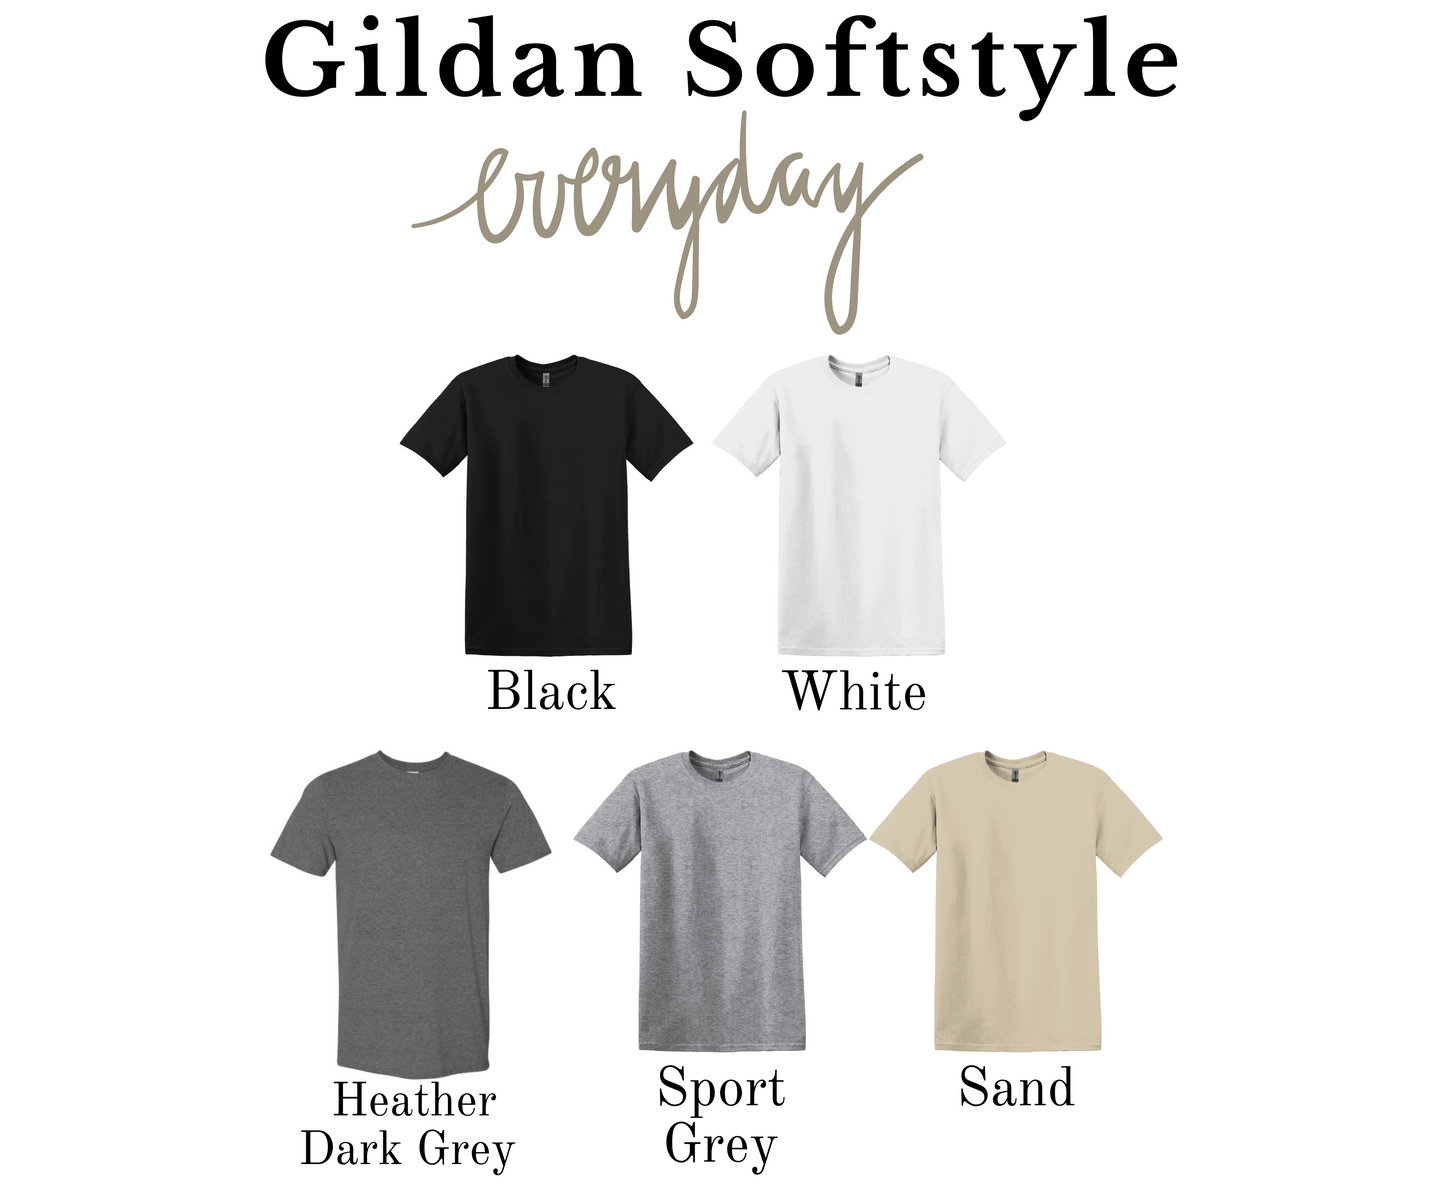 Bloom Rainbow Gildan Softstyle T-shirt or Sweatshirt